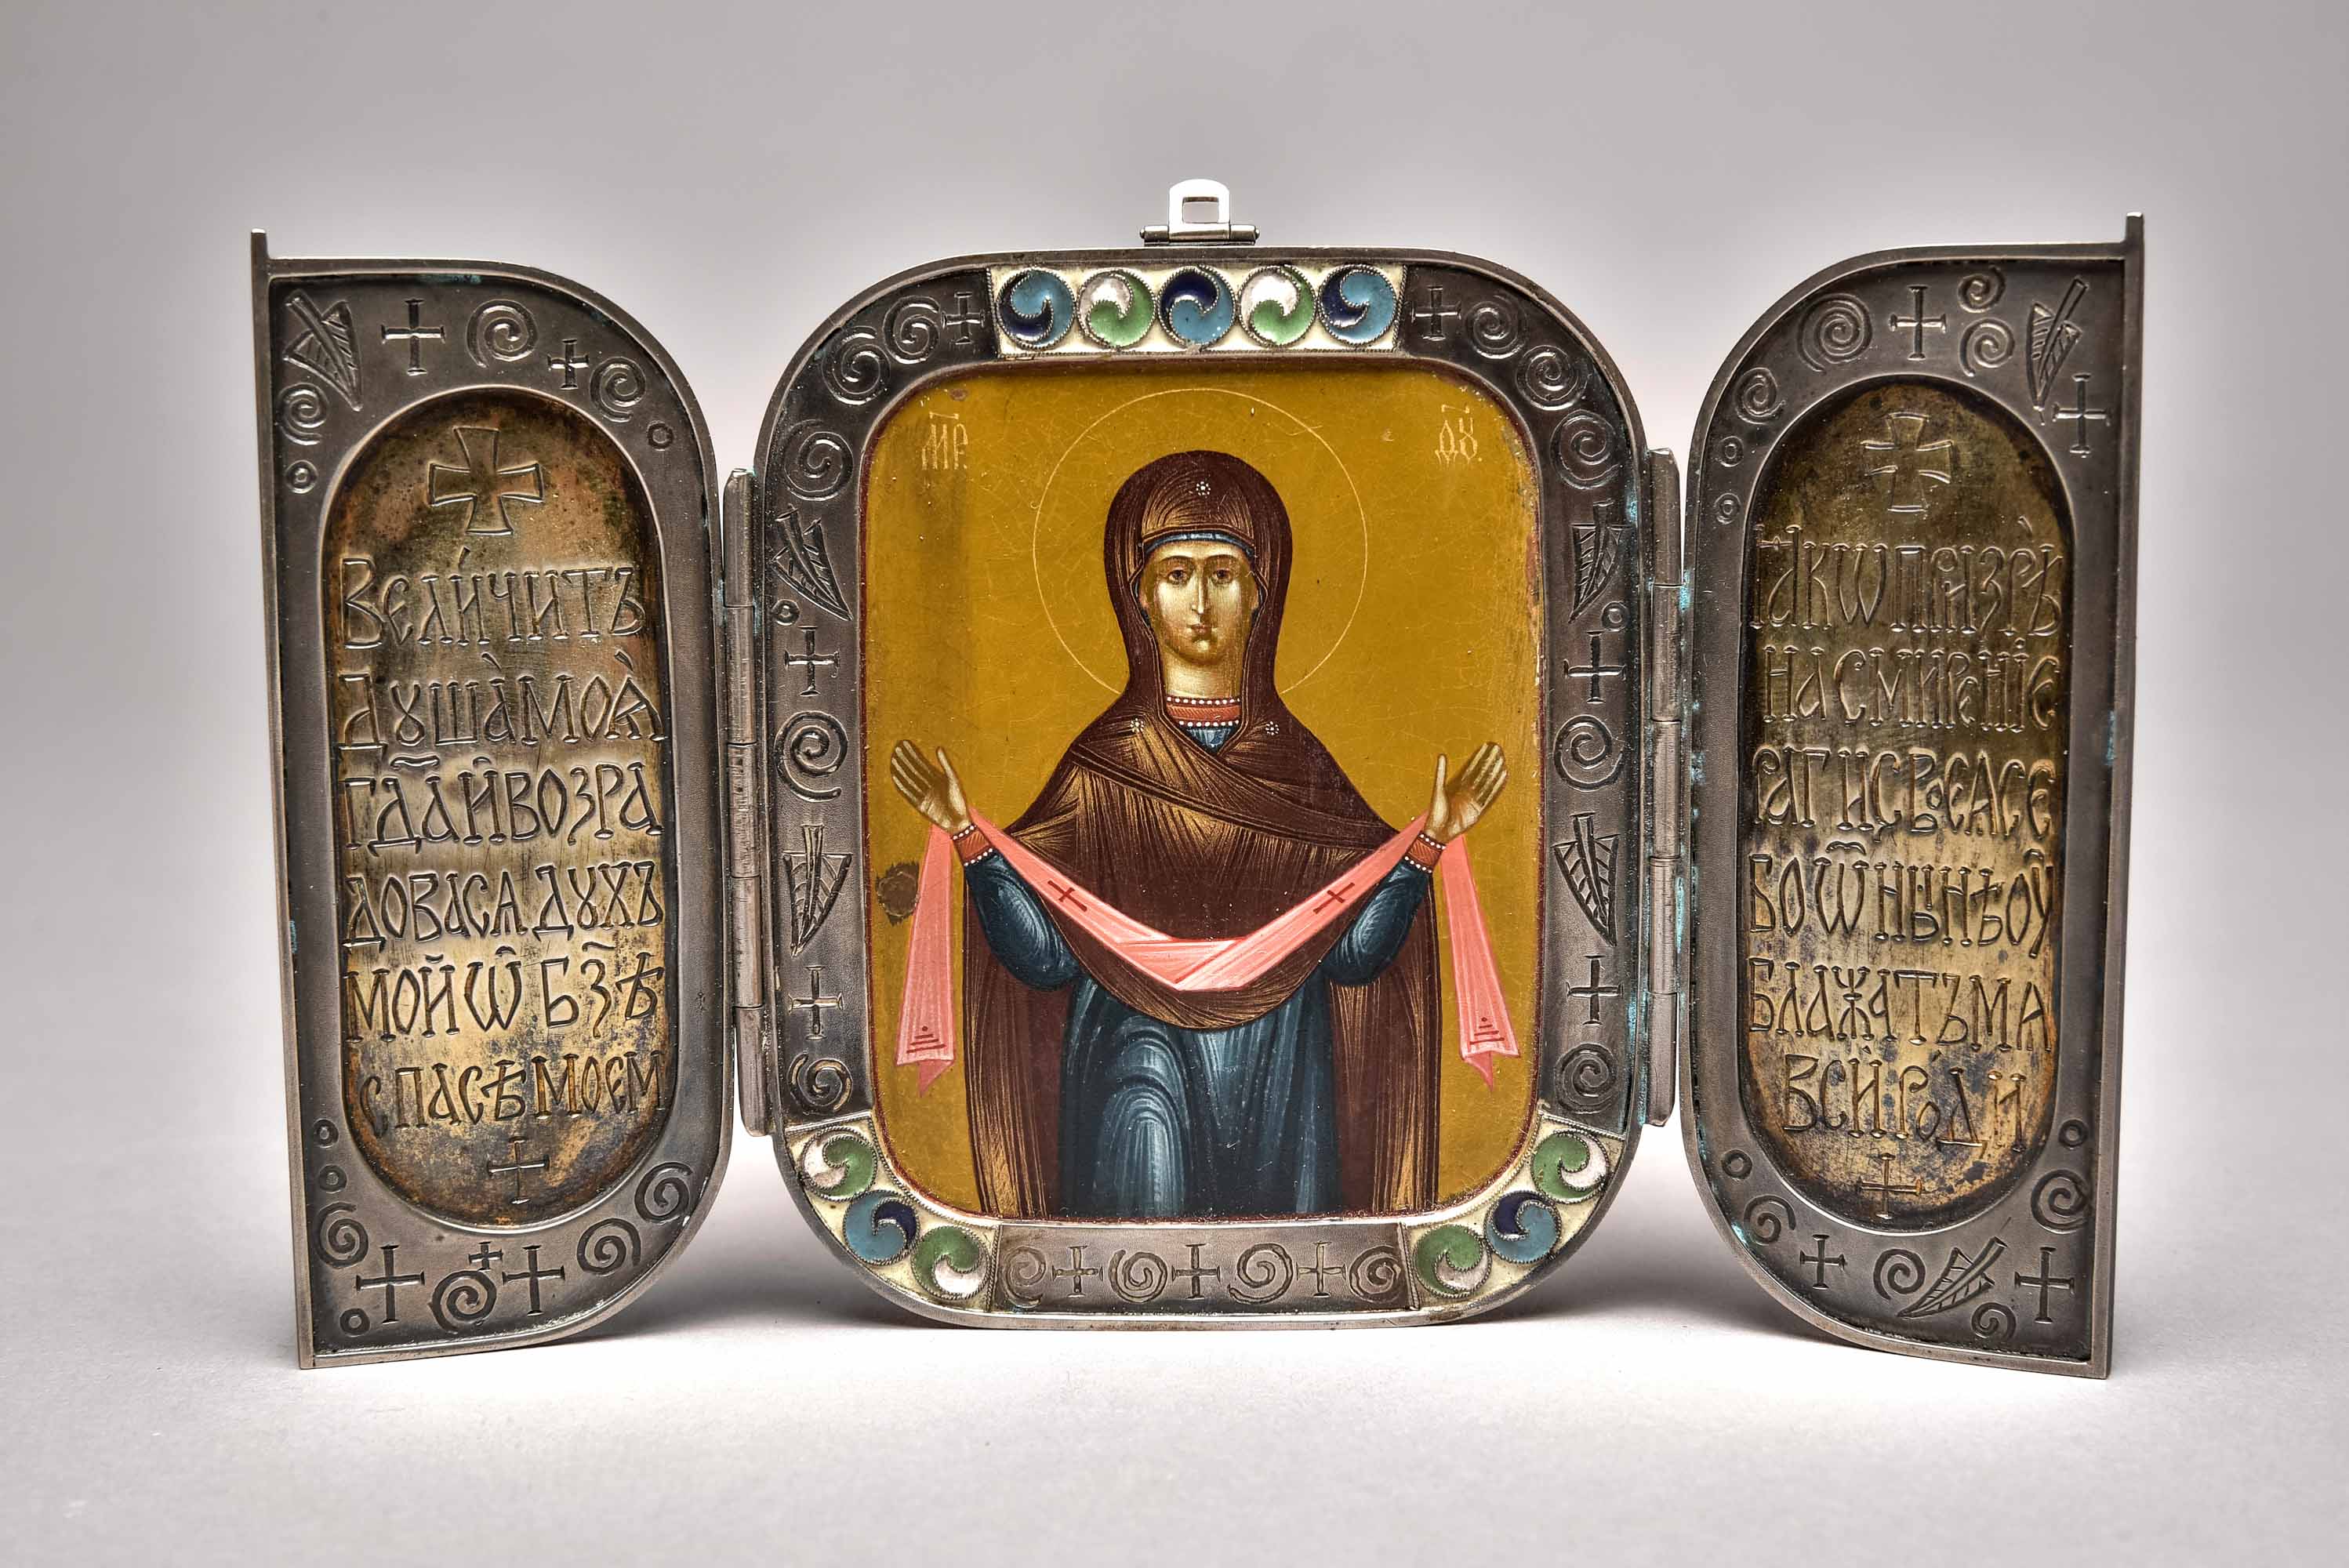 Silver icon, Russia, c. 1900, "Mary as intercessor", silver, 84 hallmarked, master's mark "O.C.E.I"